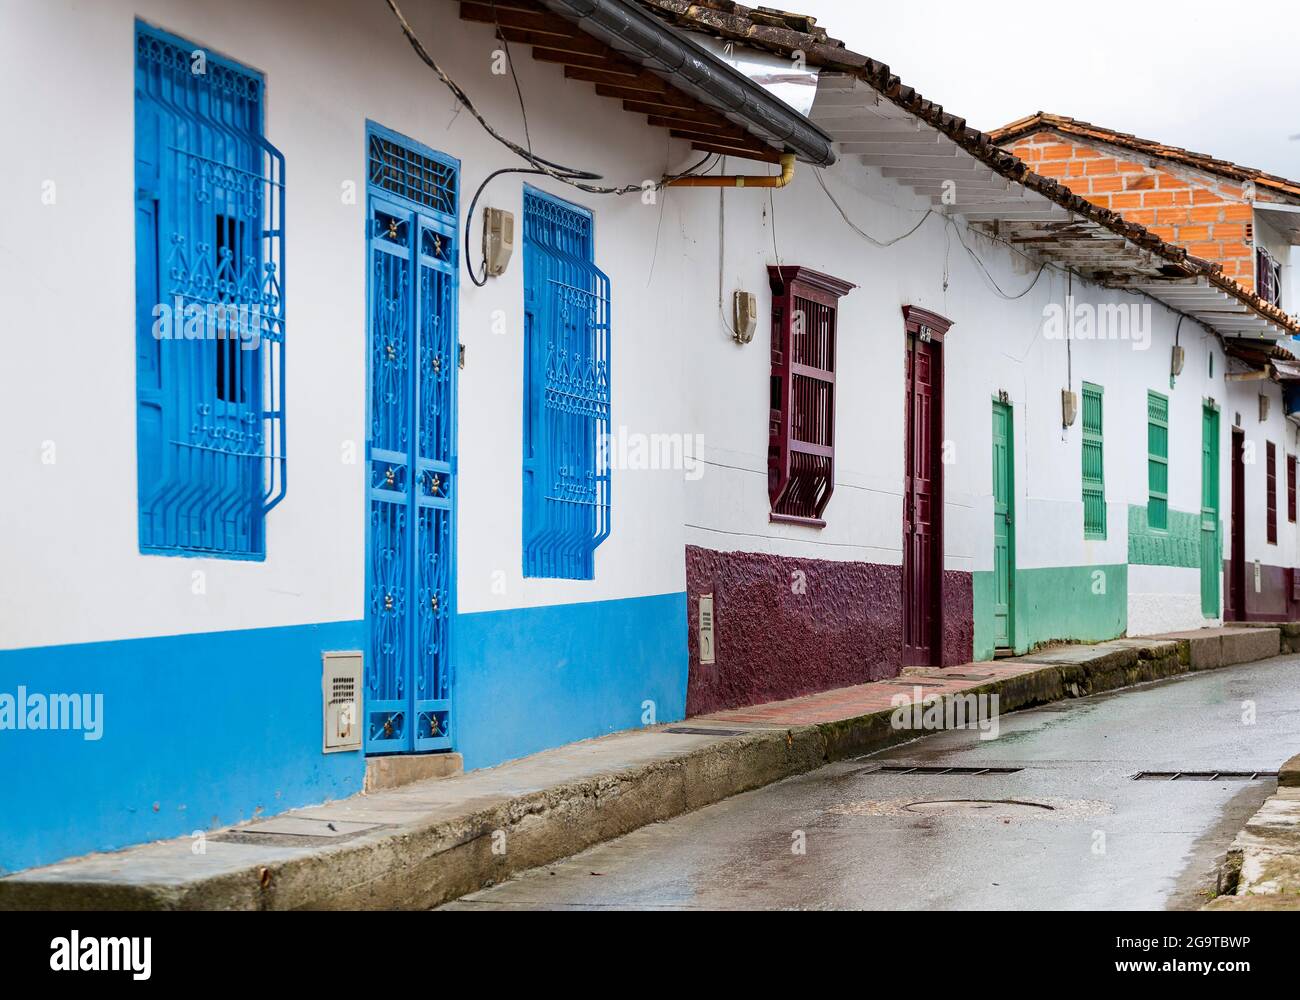 Traditionelle Fassaden kolumbianischer Städte - schöne bunte Häuser Stockfoto